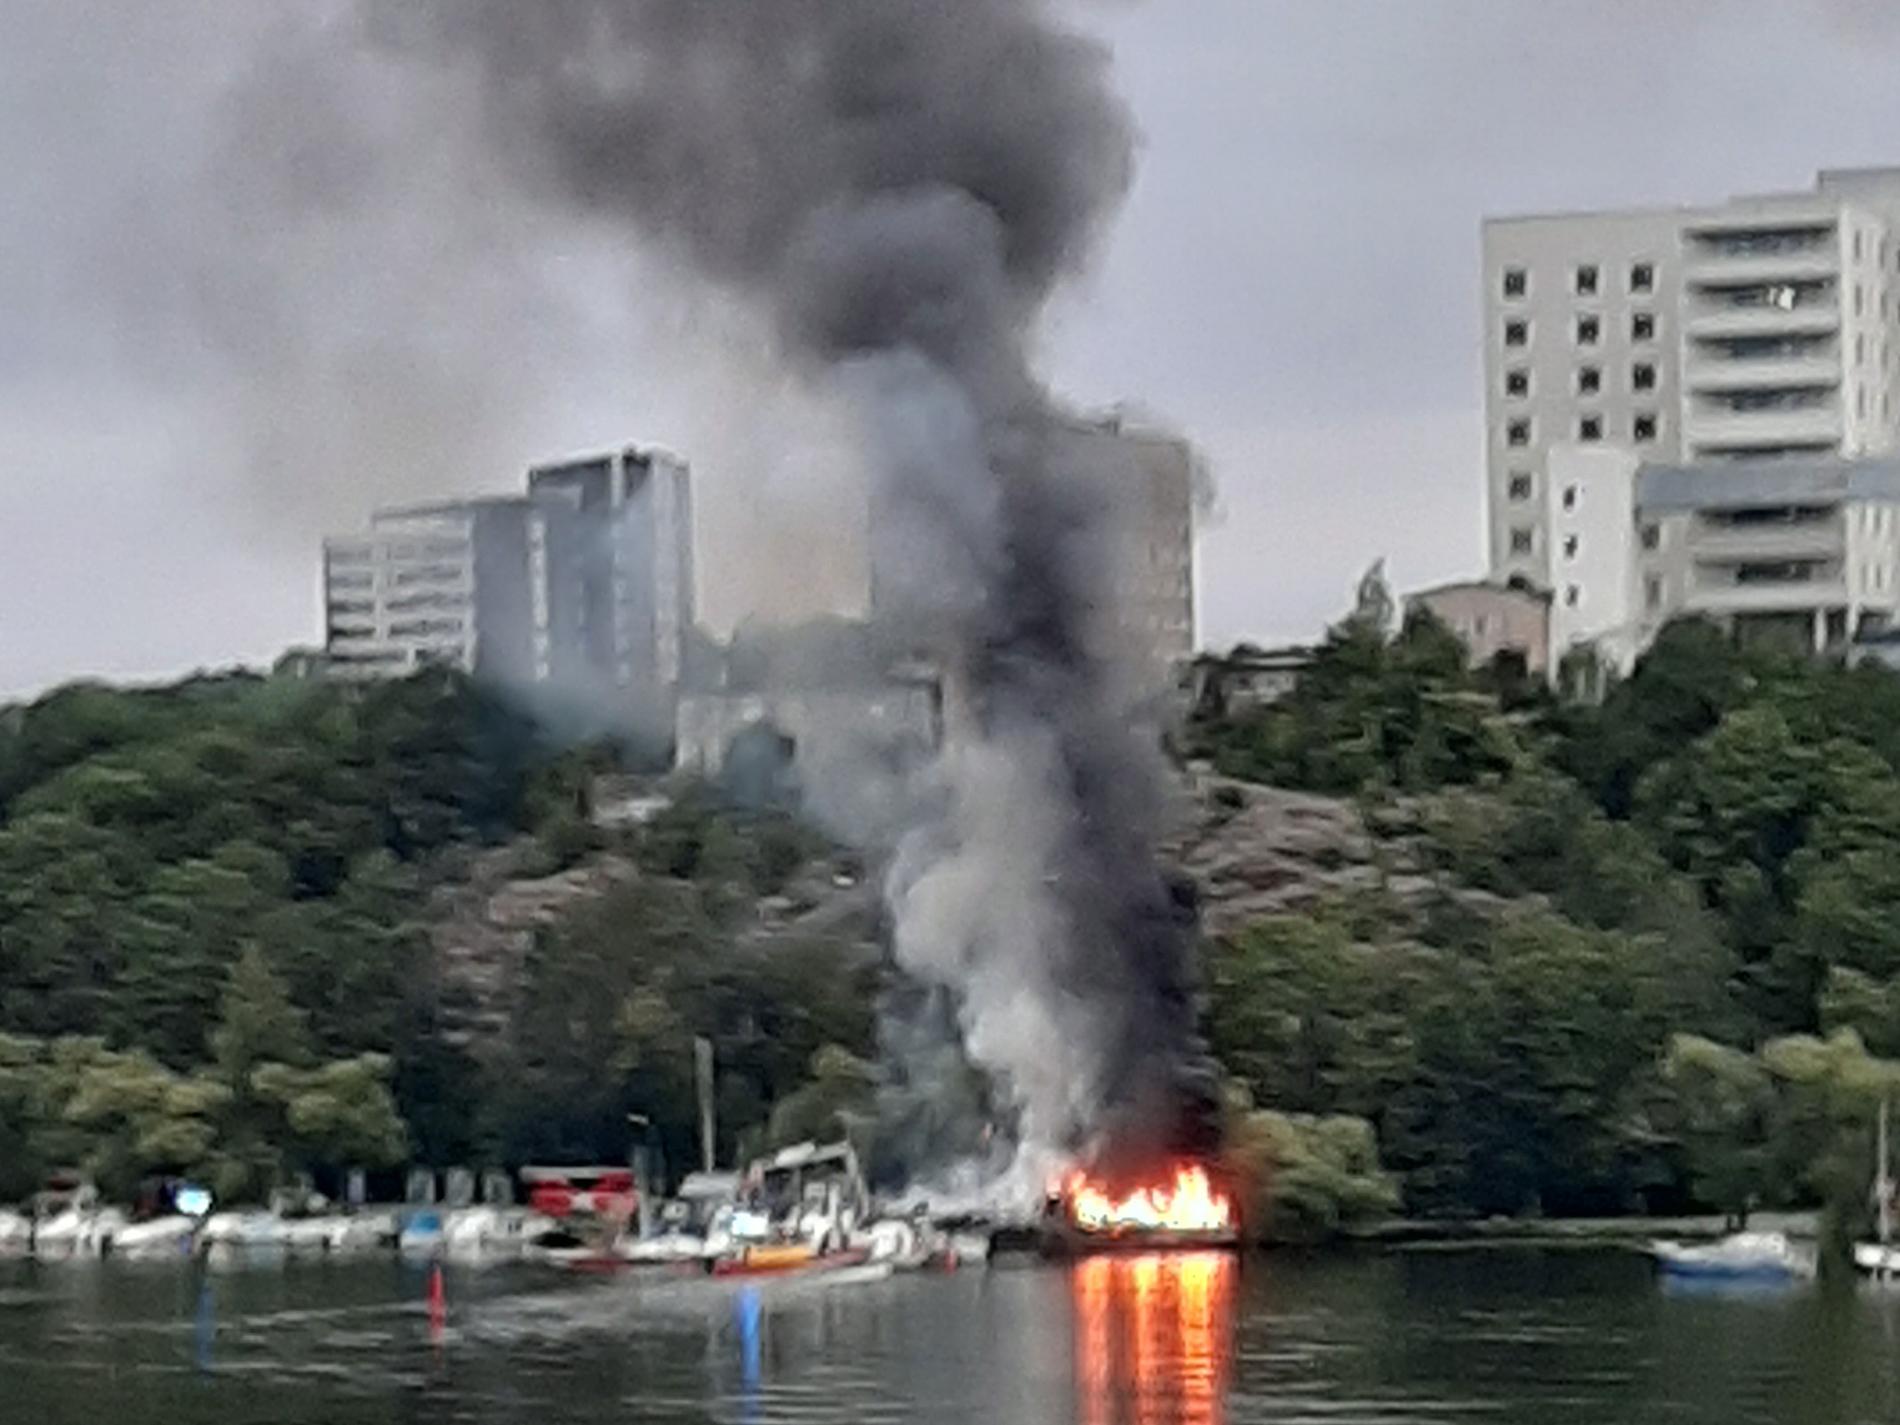  En båt vid Tantolunden i Stockholm började brinna på fredagsmorgonen.